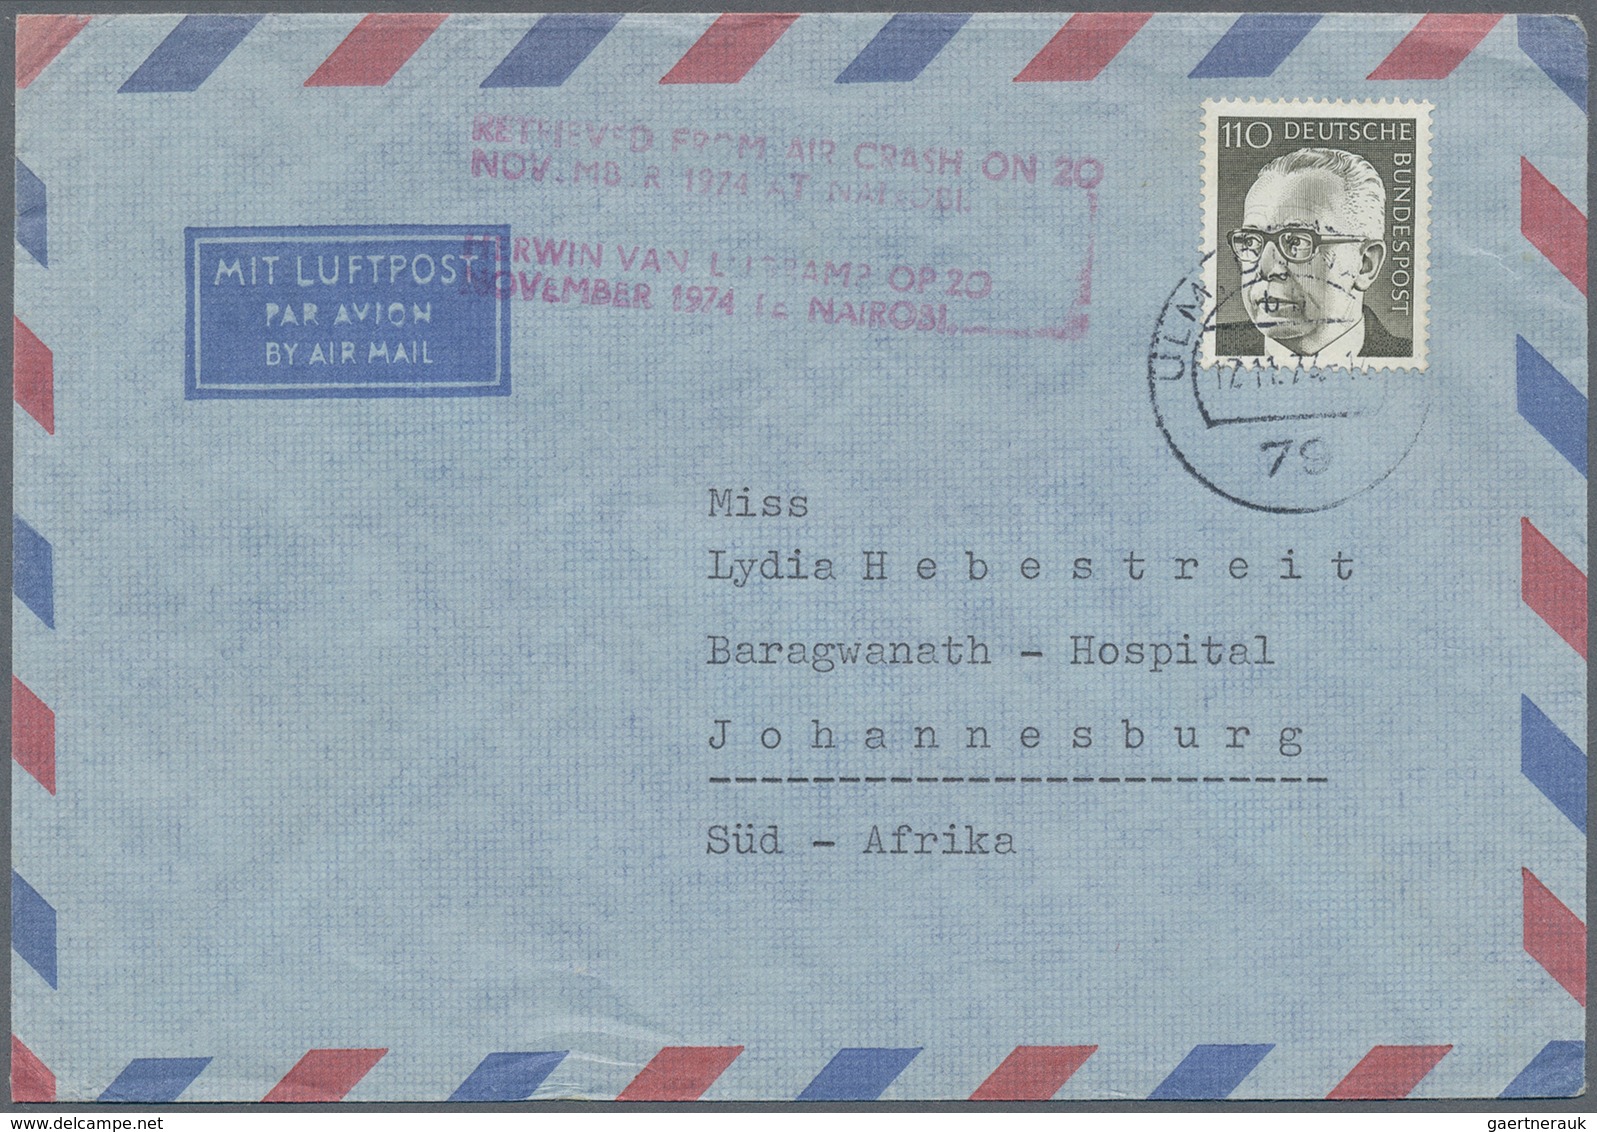 32662 Bundesrepublik Deutschland: 1948/85 (ca.), Posten von ca. 60 aussergewöhnlichen ehemaligen Einzellos